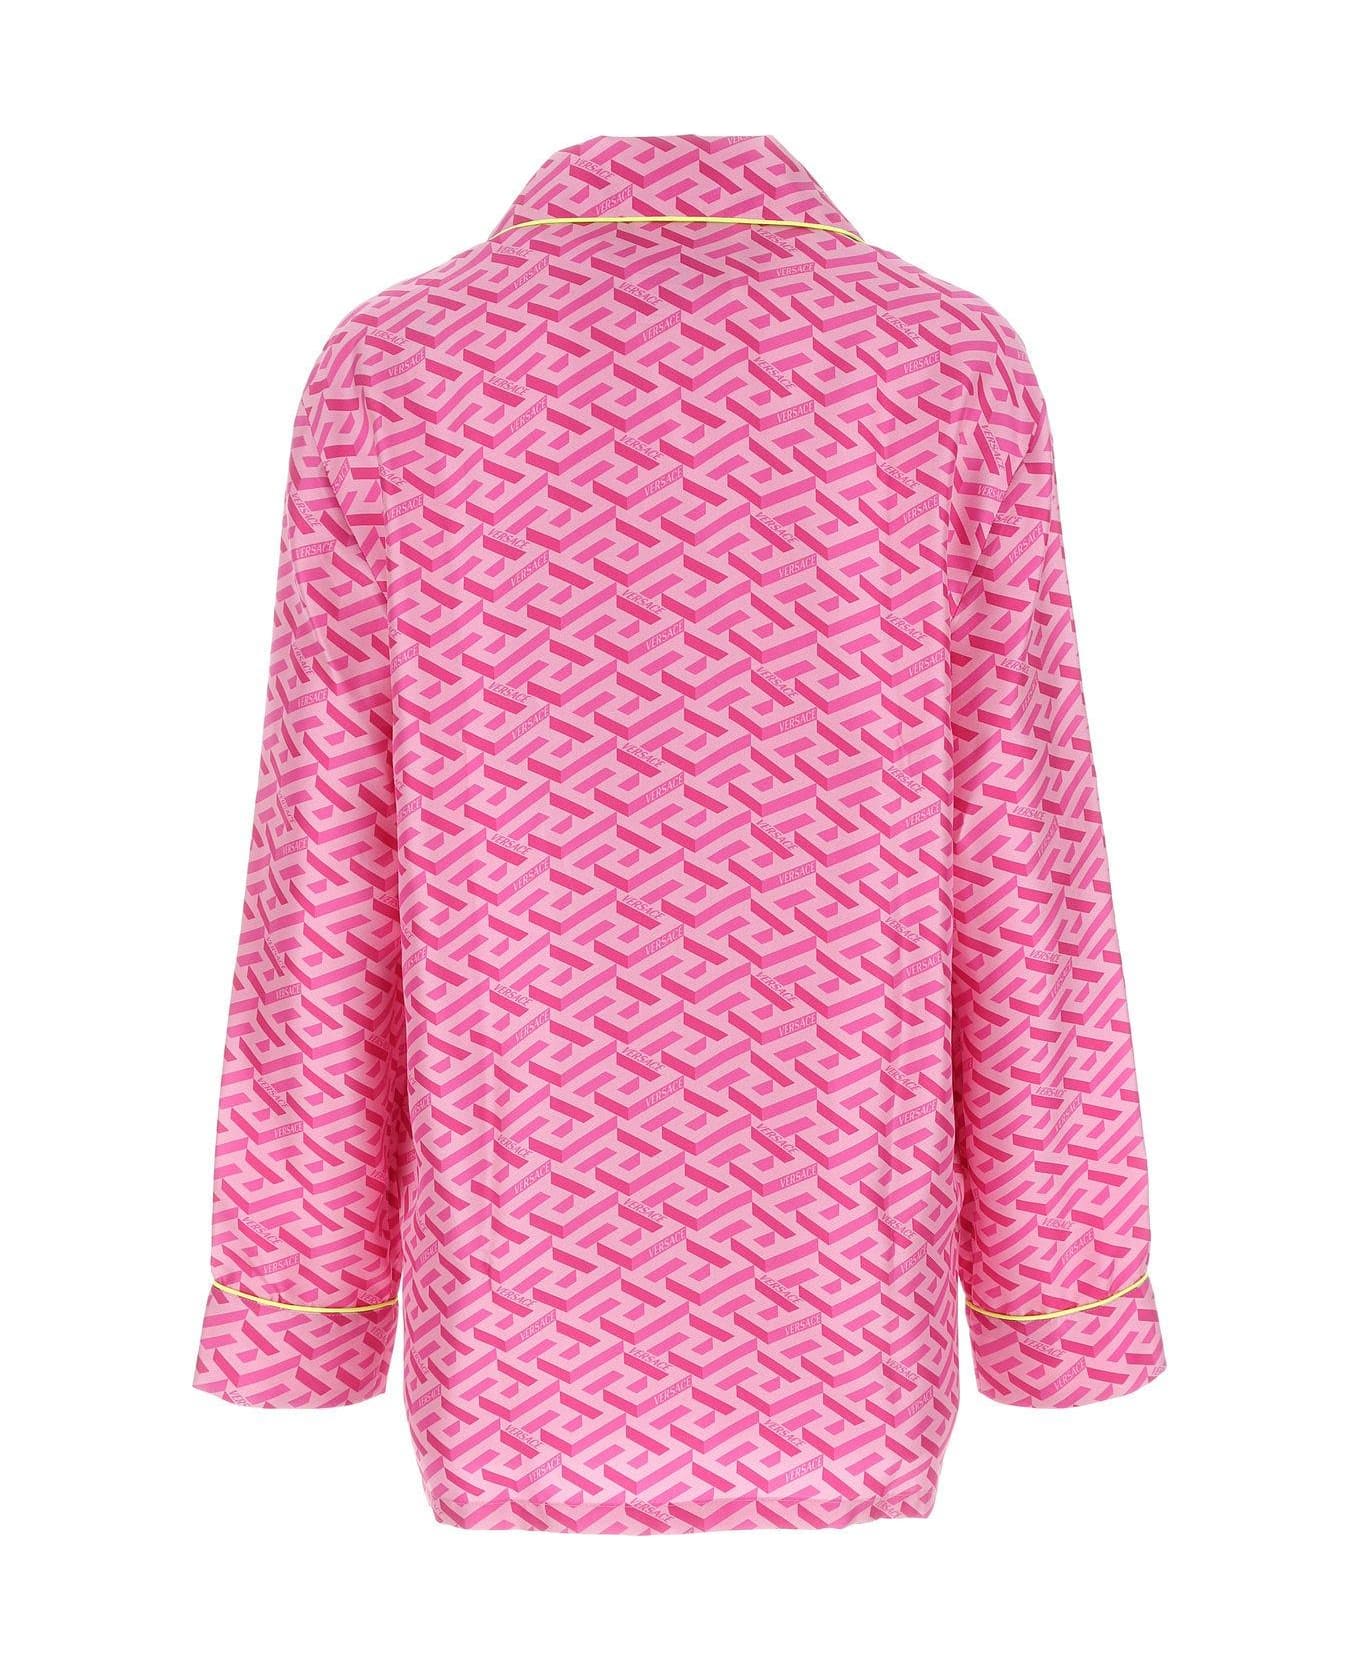 Versace Printed Satin Pijama Shirt - PINK